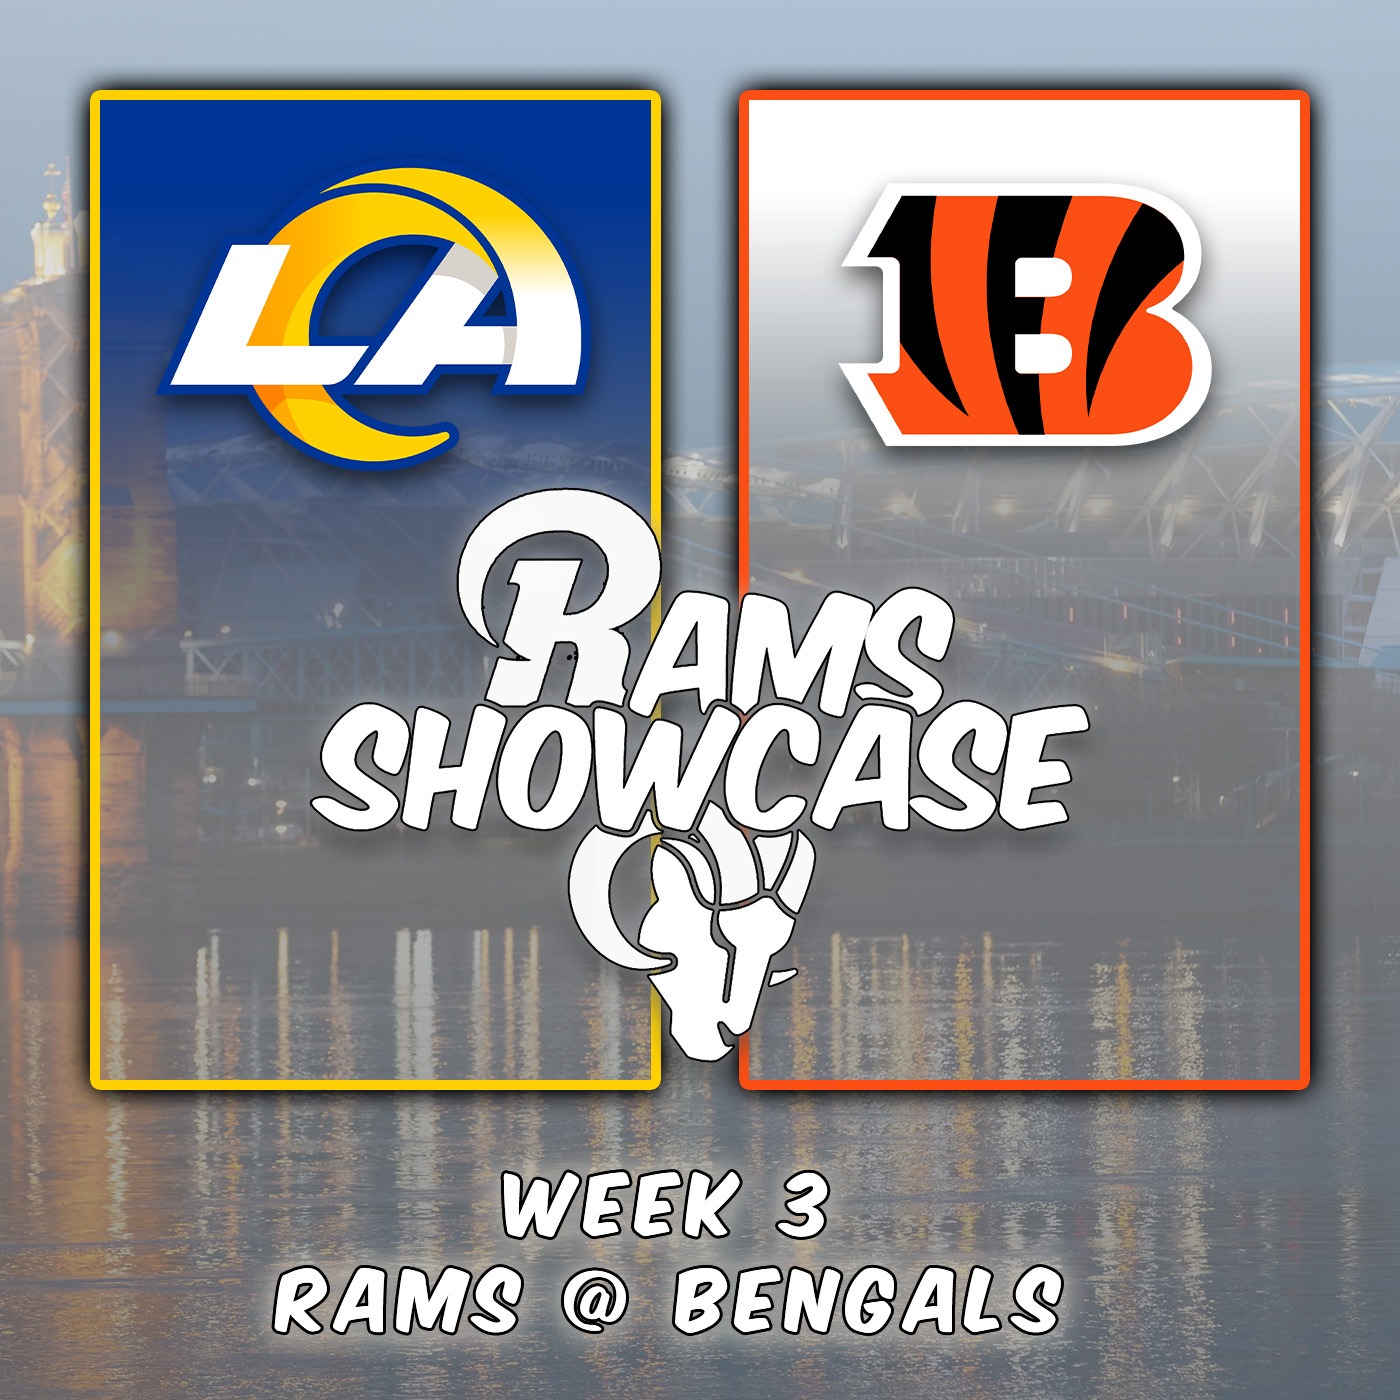 Week 3 | Rams @ Bengals